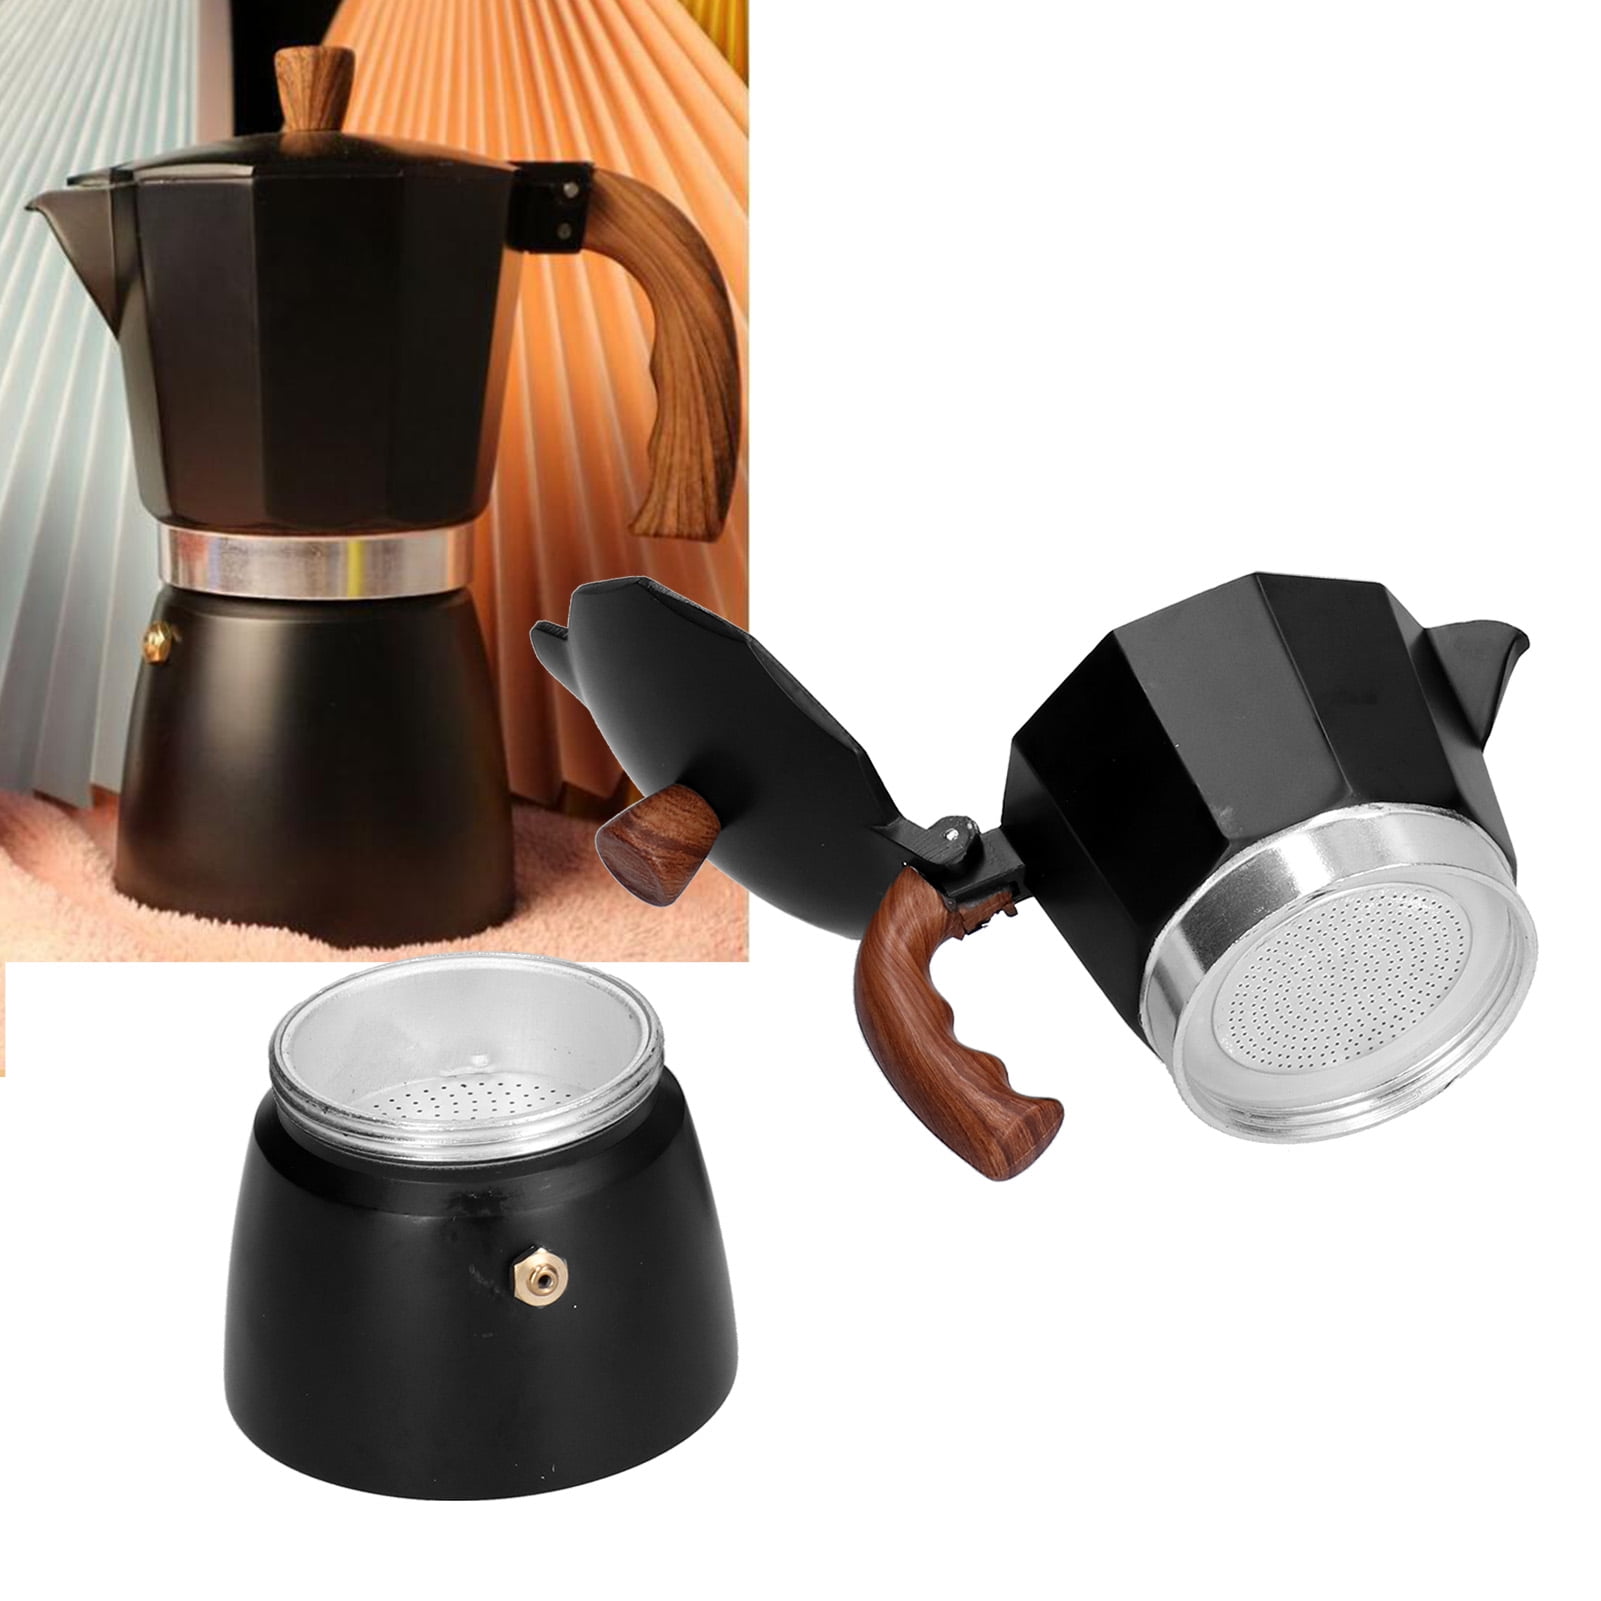 DÉBUT Stainless Steel Italian Espresso Coffee Maker Stovetop Moka Pot Greca  Coffee Maker Latte Cappuccino Percolator, 8 Espresso Cup - 16.9 Oz